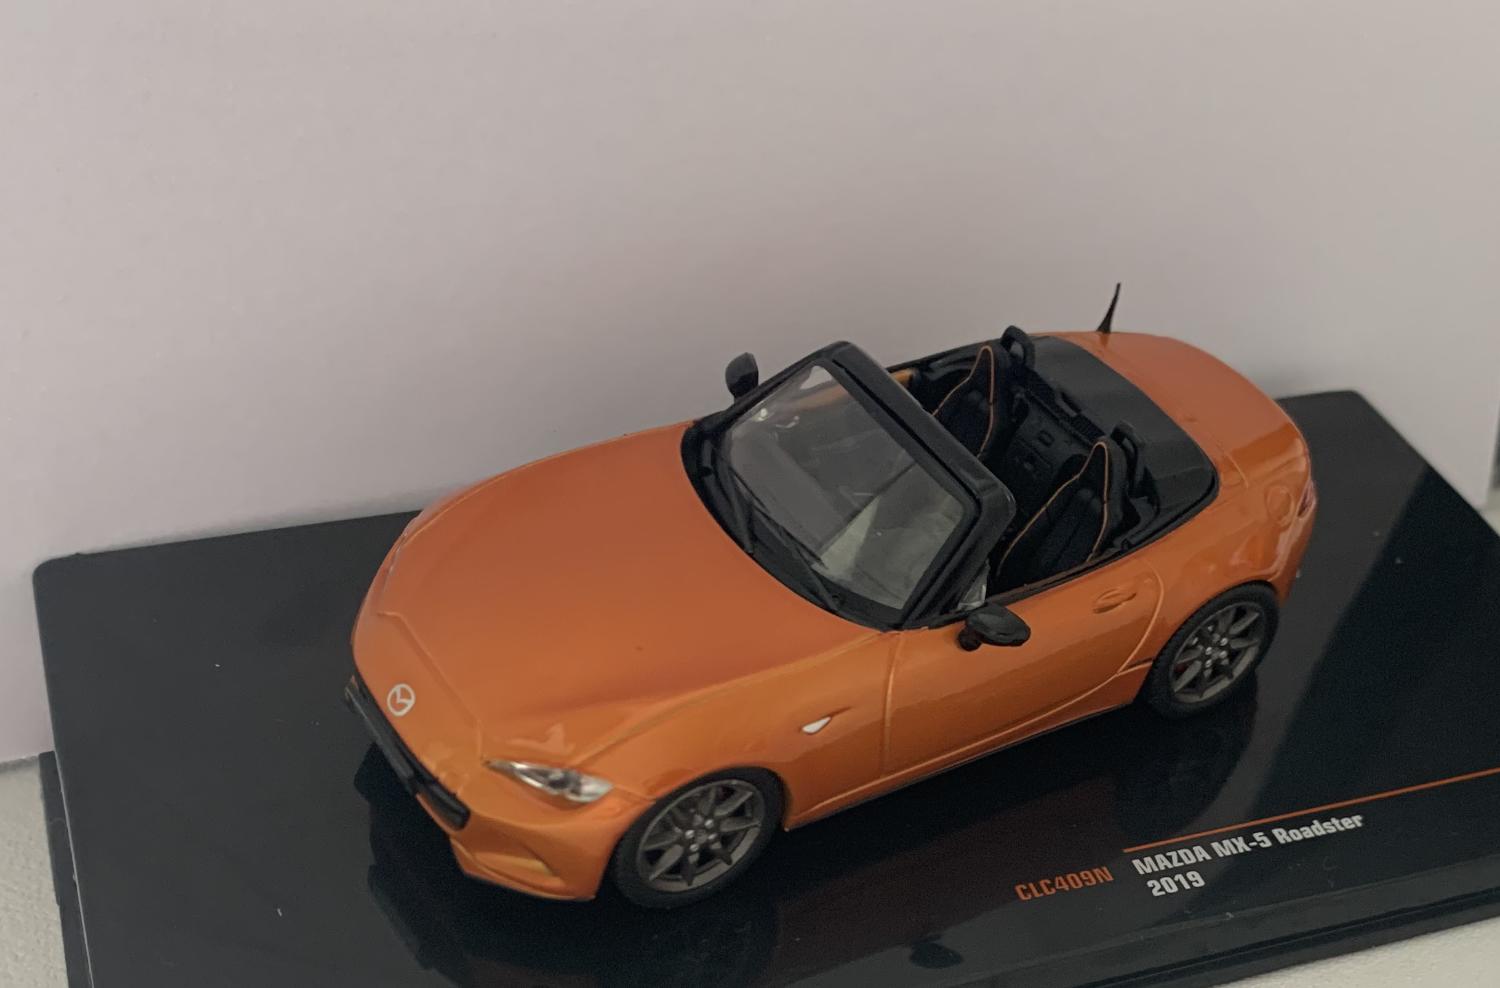 Mazda MX-5 Roadster 2019 in orange 1:43 scale model from IXO, CLC409N